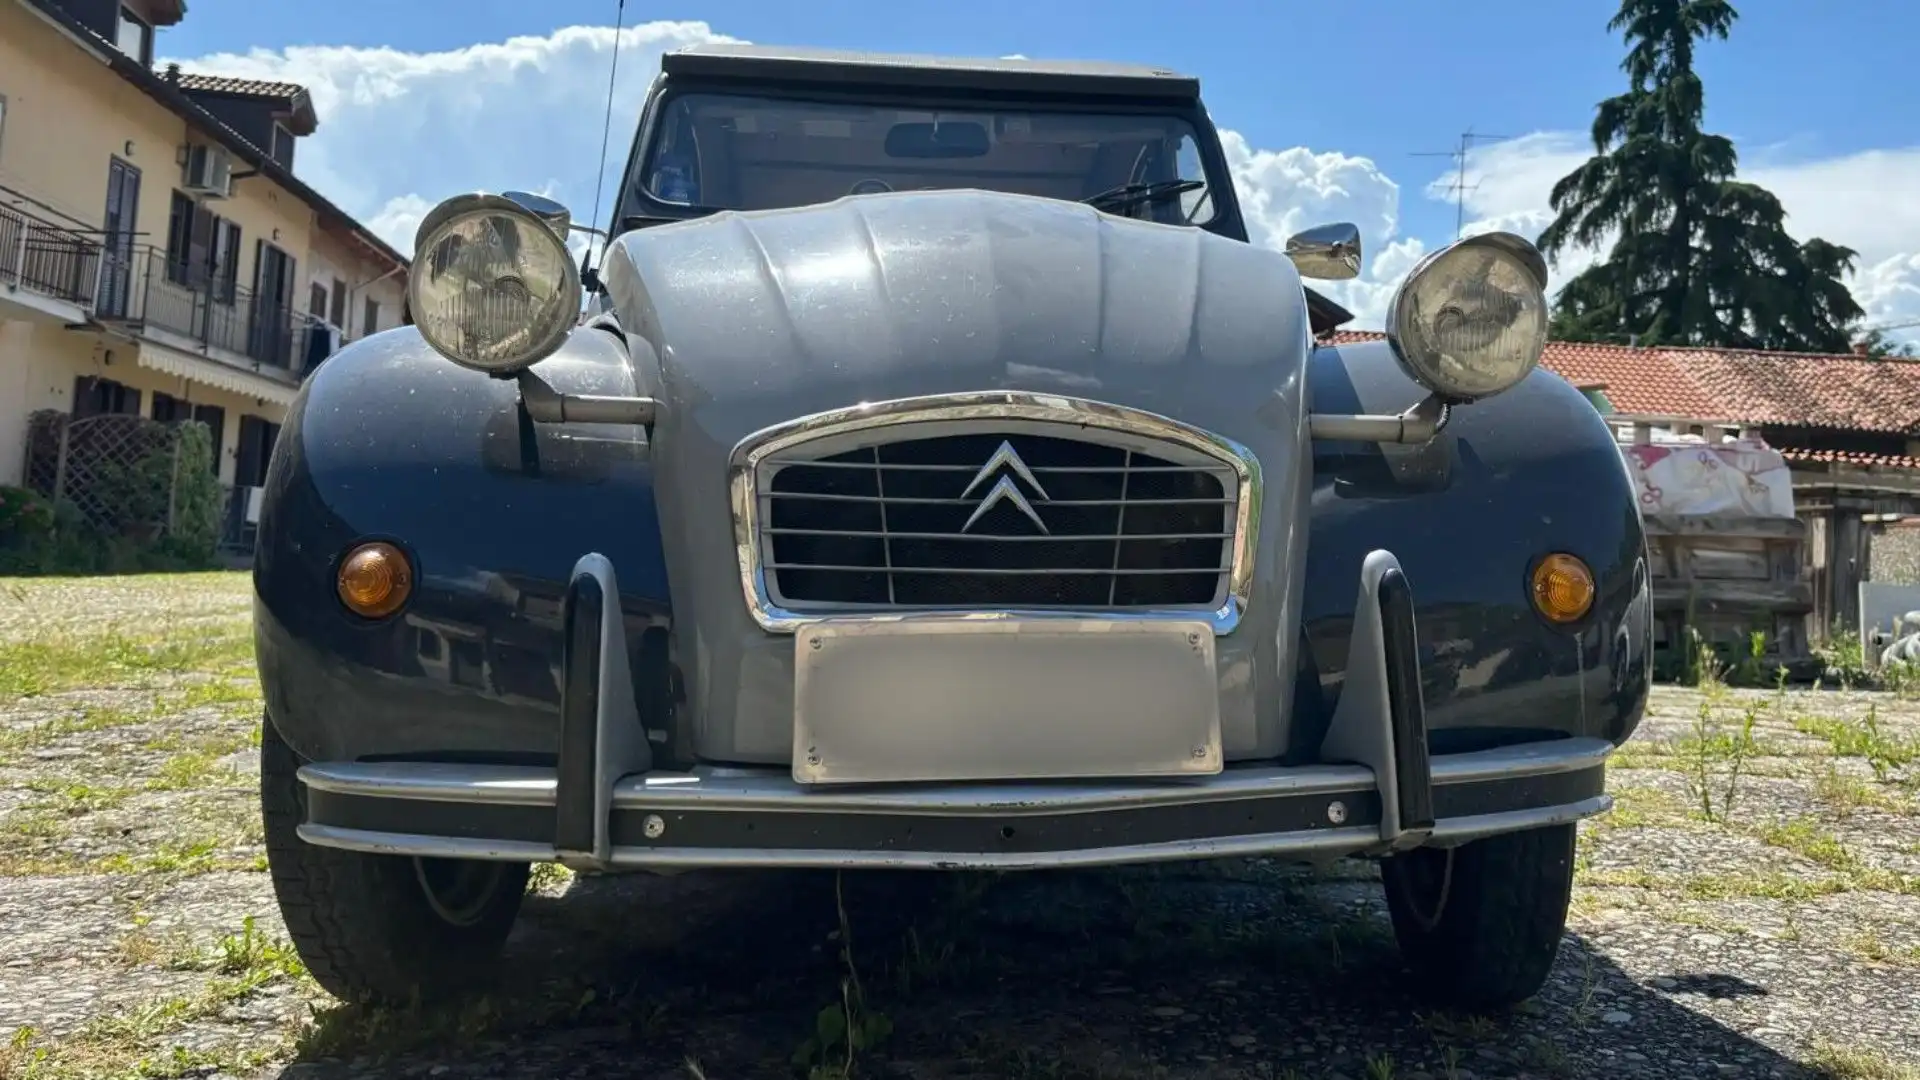 Ancora oggi, la Citroën 2CV è ricordata con affetto e nostalgia